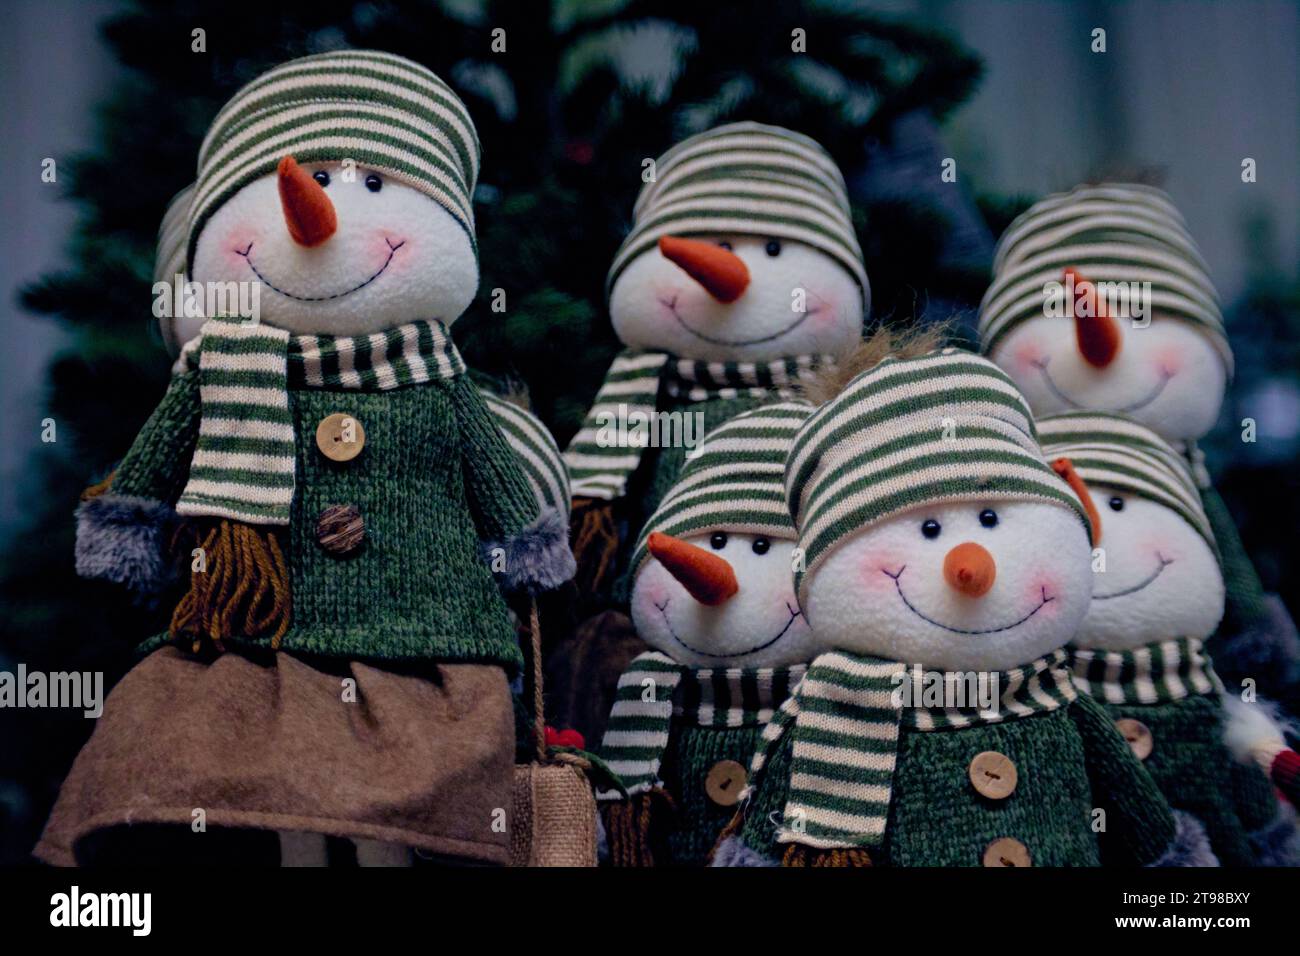 Eine Gruppe von Schneemännern mit roten Möhrennasen in grünen Pullover, Tüchern und gestreiften Hüten unter dem Weihnachtsbaum. Weihnachtsdekoration. Stockfoto